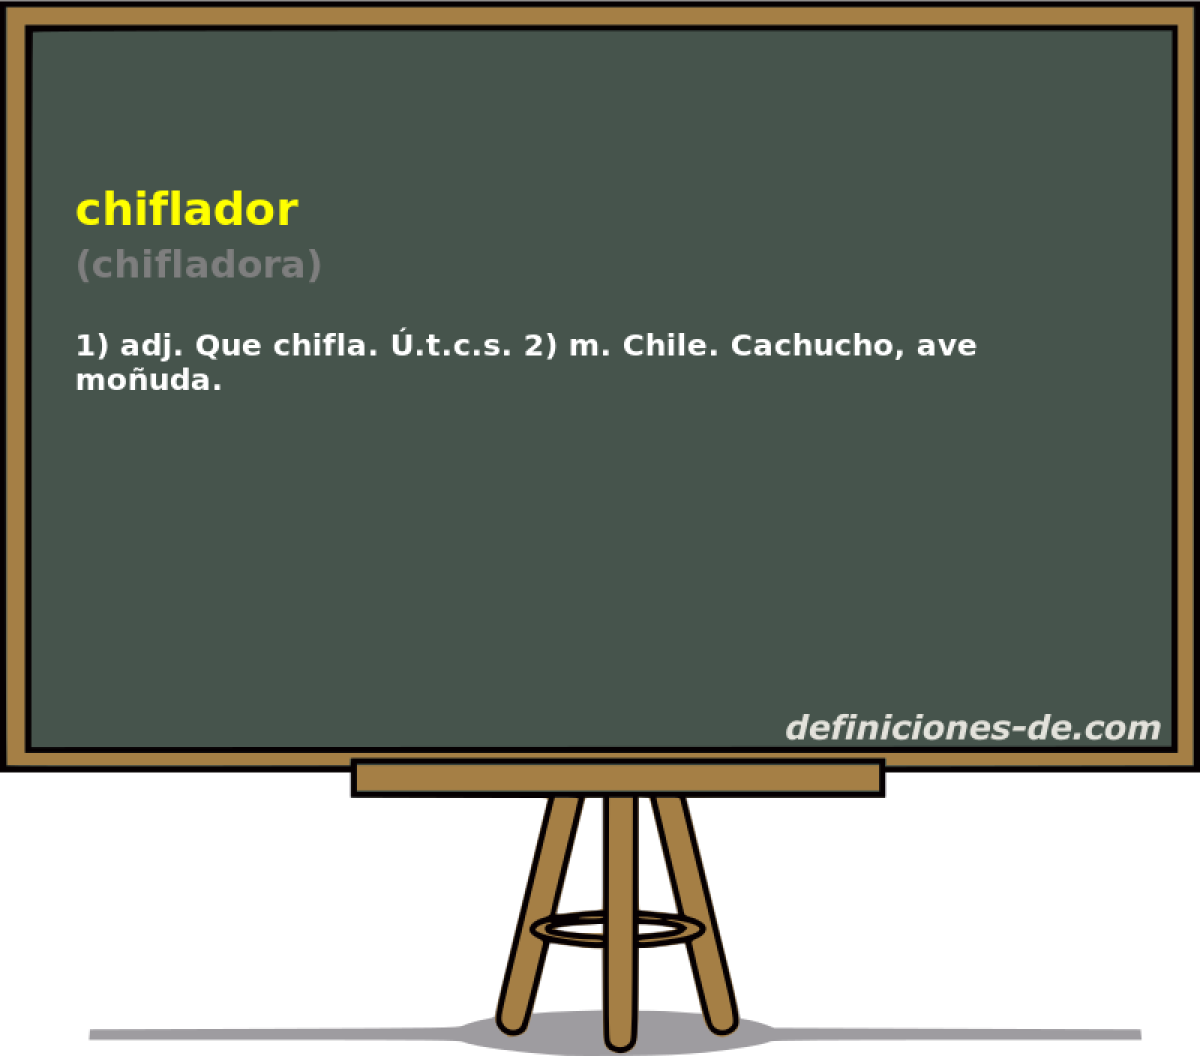 chiflador (chifladora)